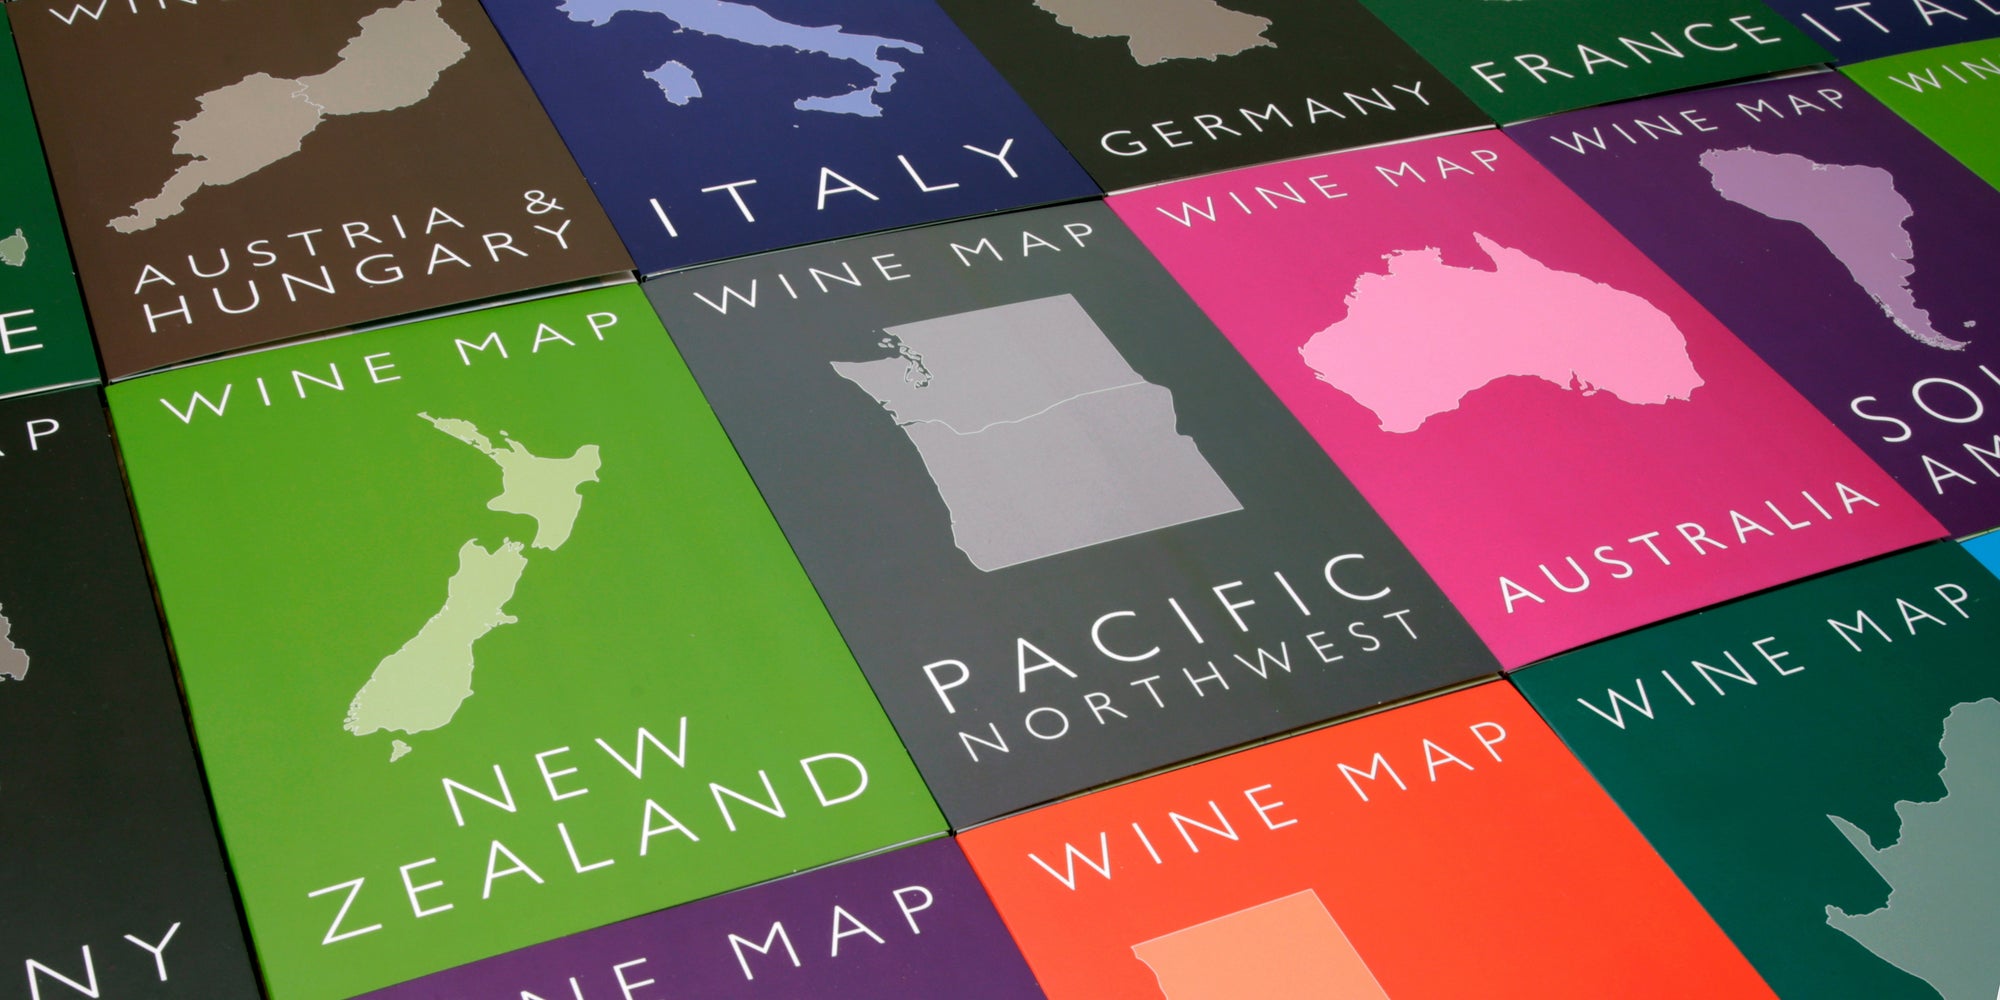 Bookshelf Wine Maps